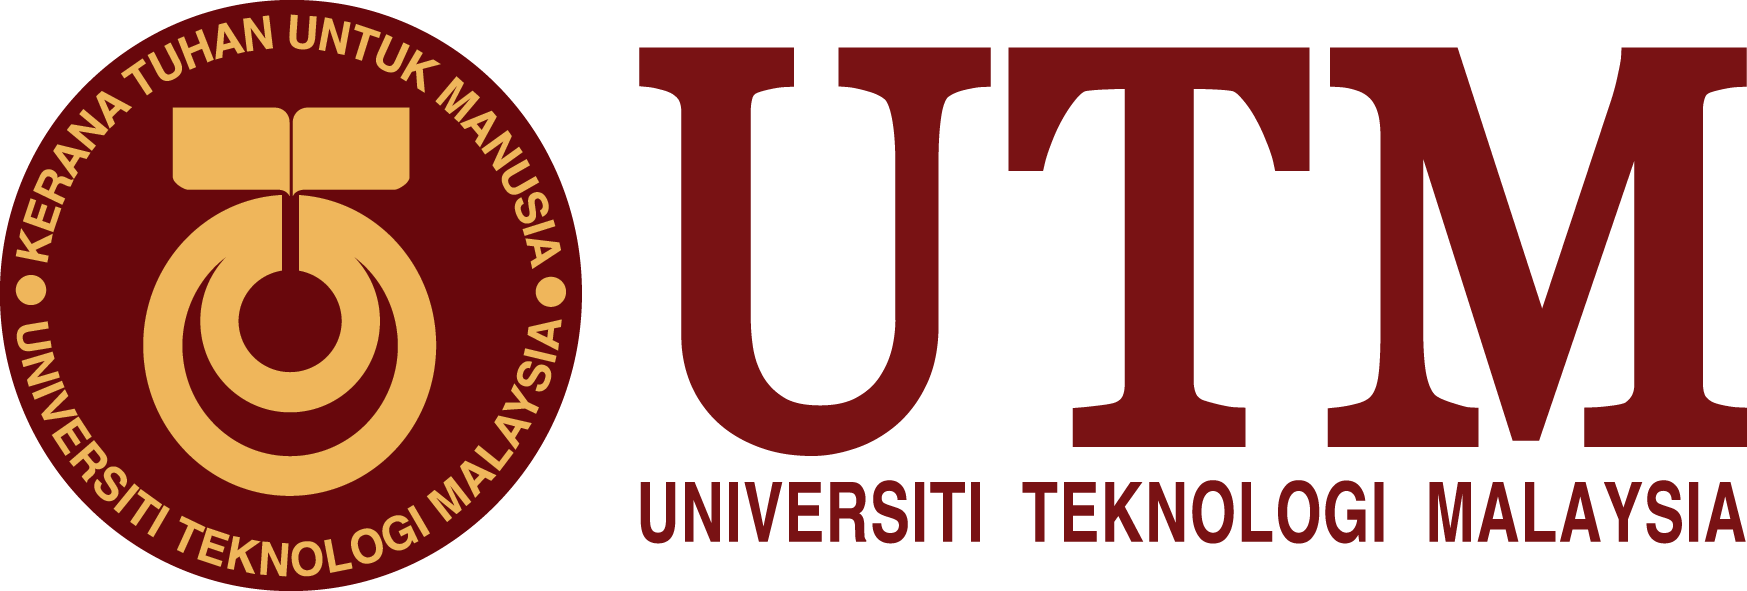 Universiti Teknologi Malaysia (UTM) logo